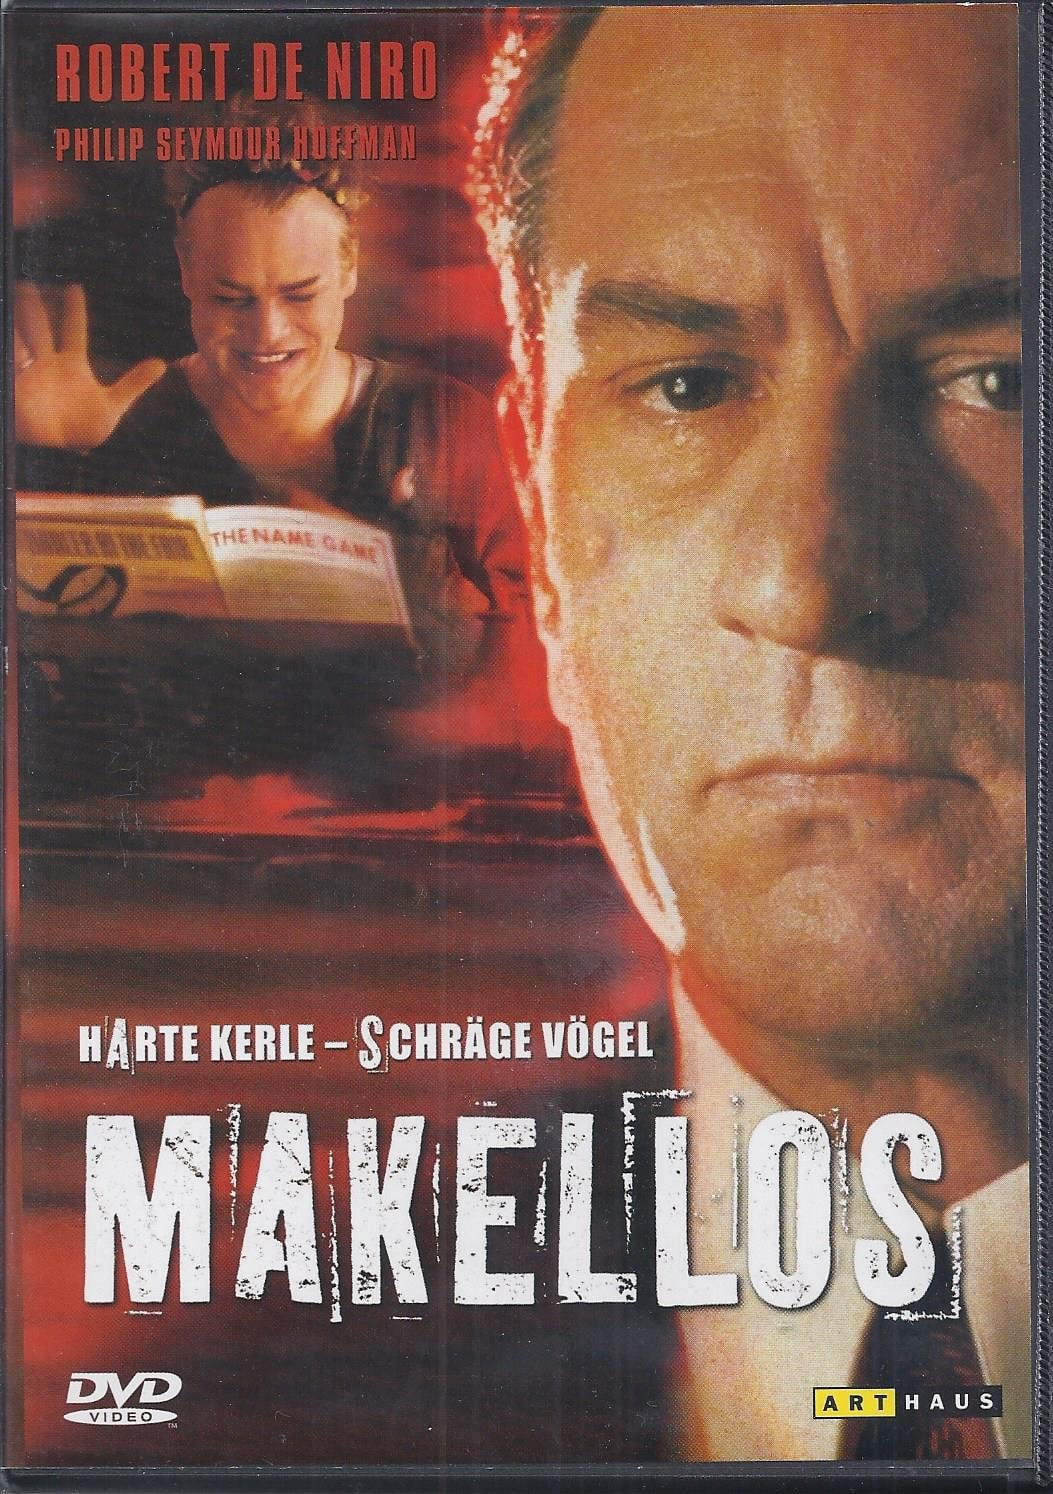 Plakat von "Makellos"